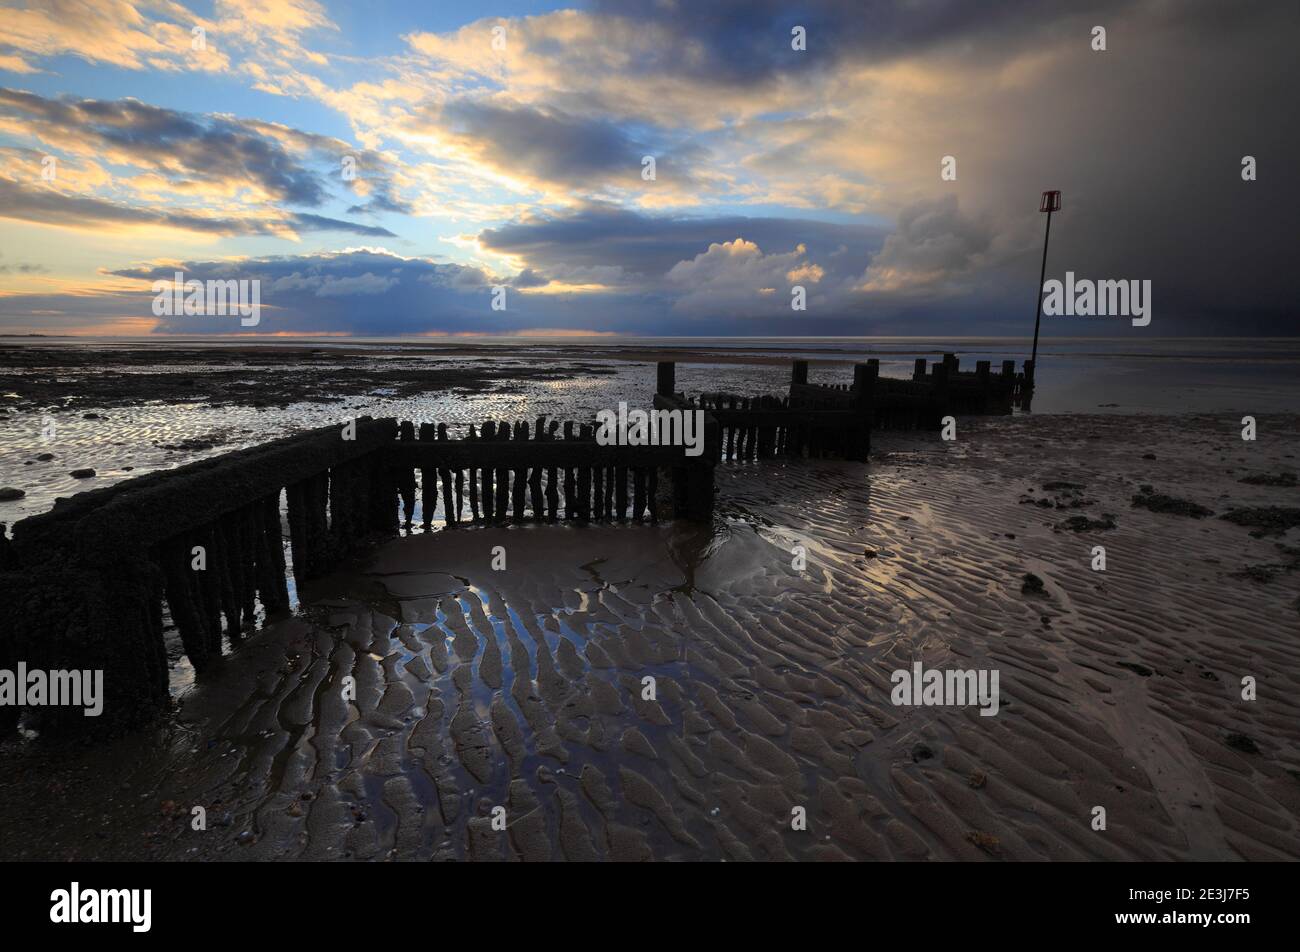 Dramatic skies and breakwater on Heacham beach, Norfolk, UK. Stock Photo